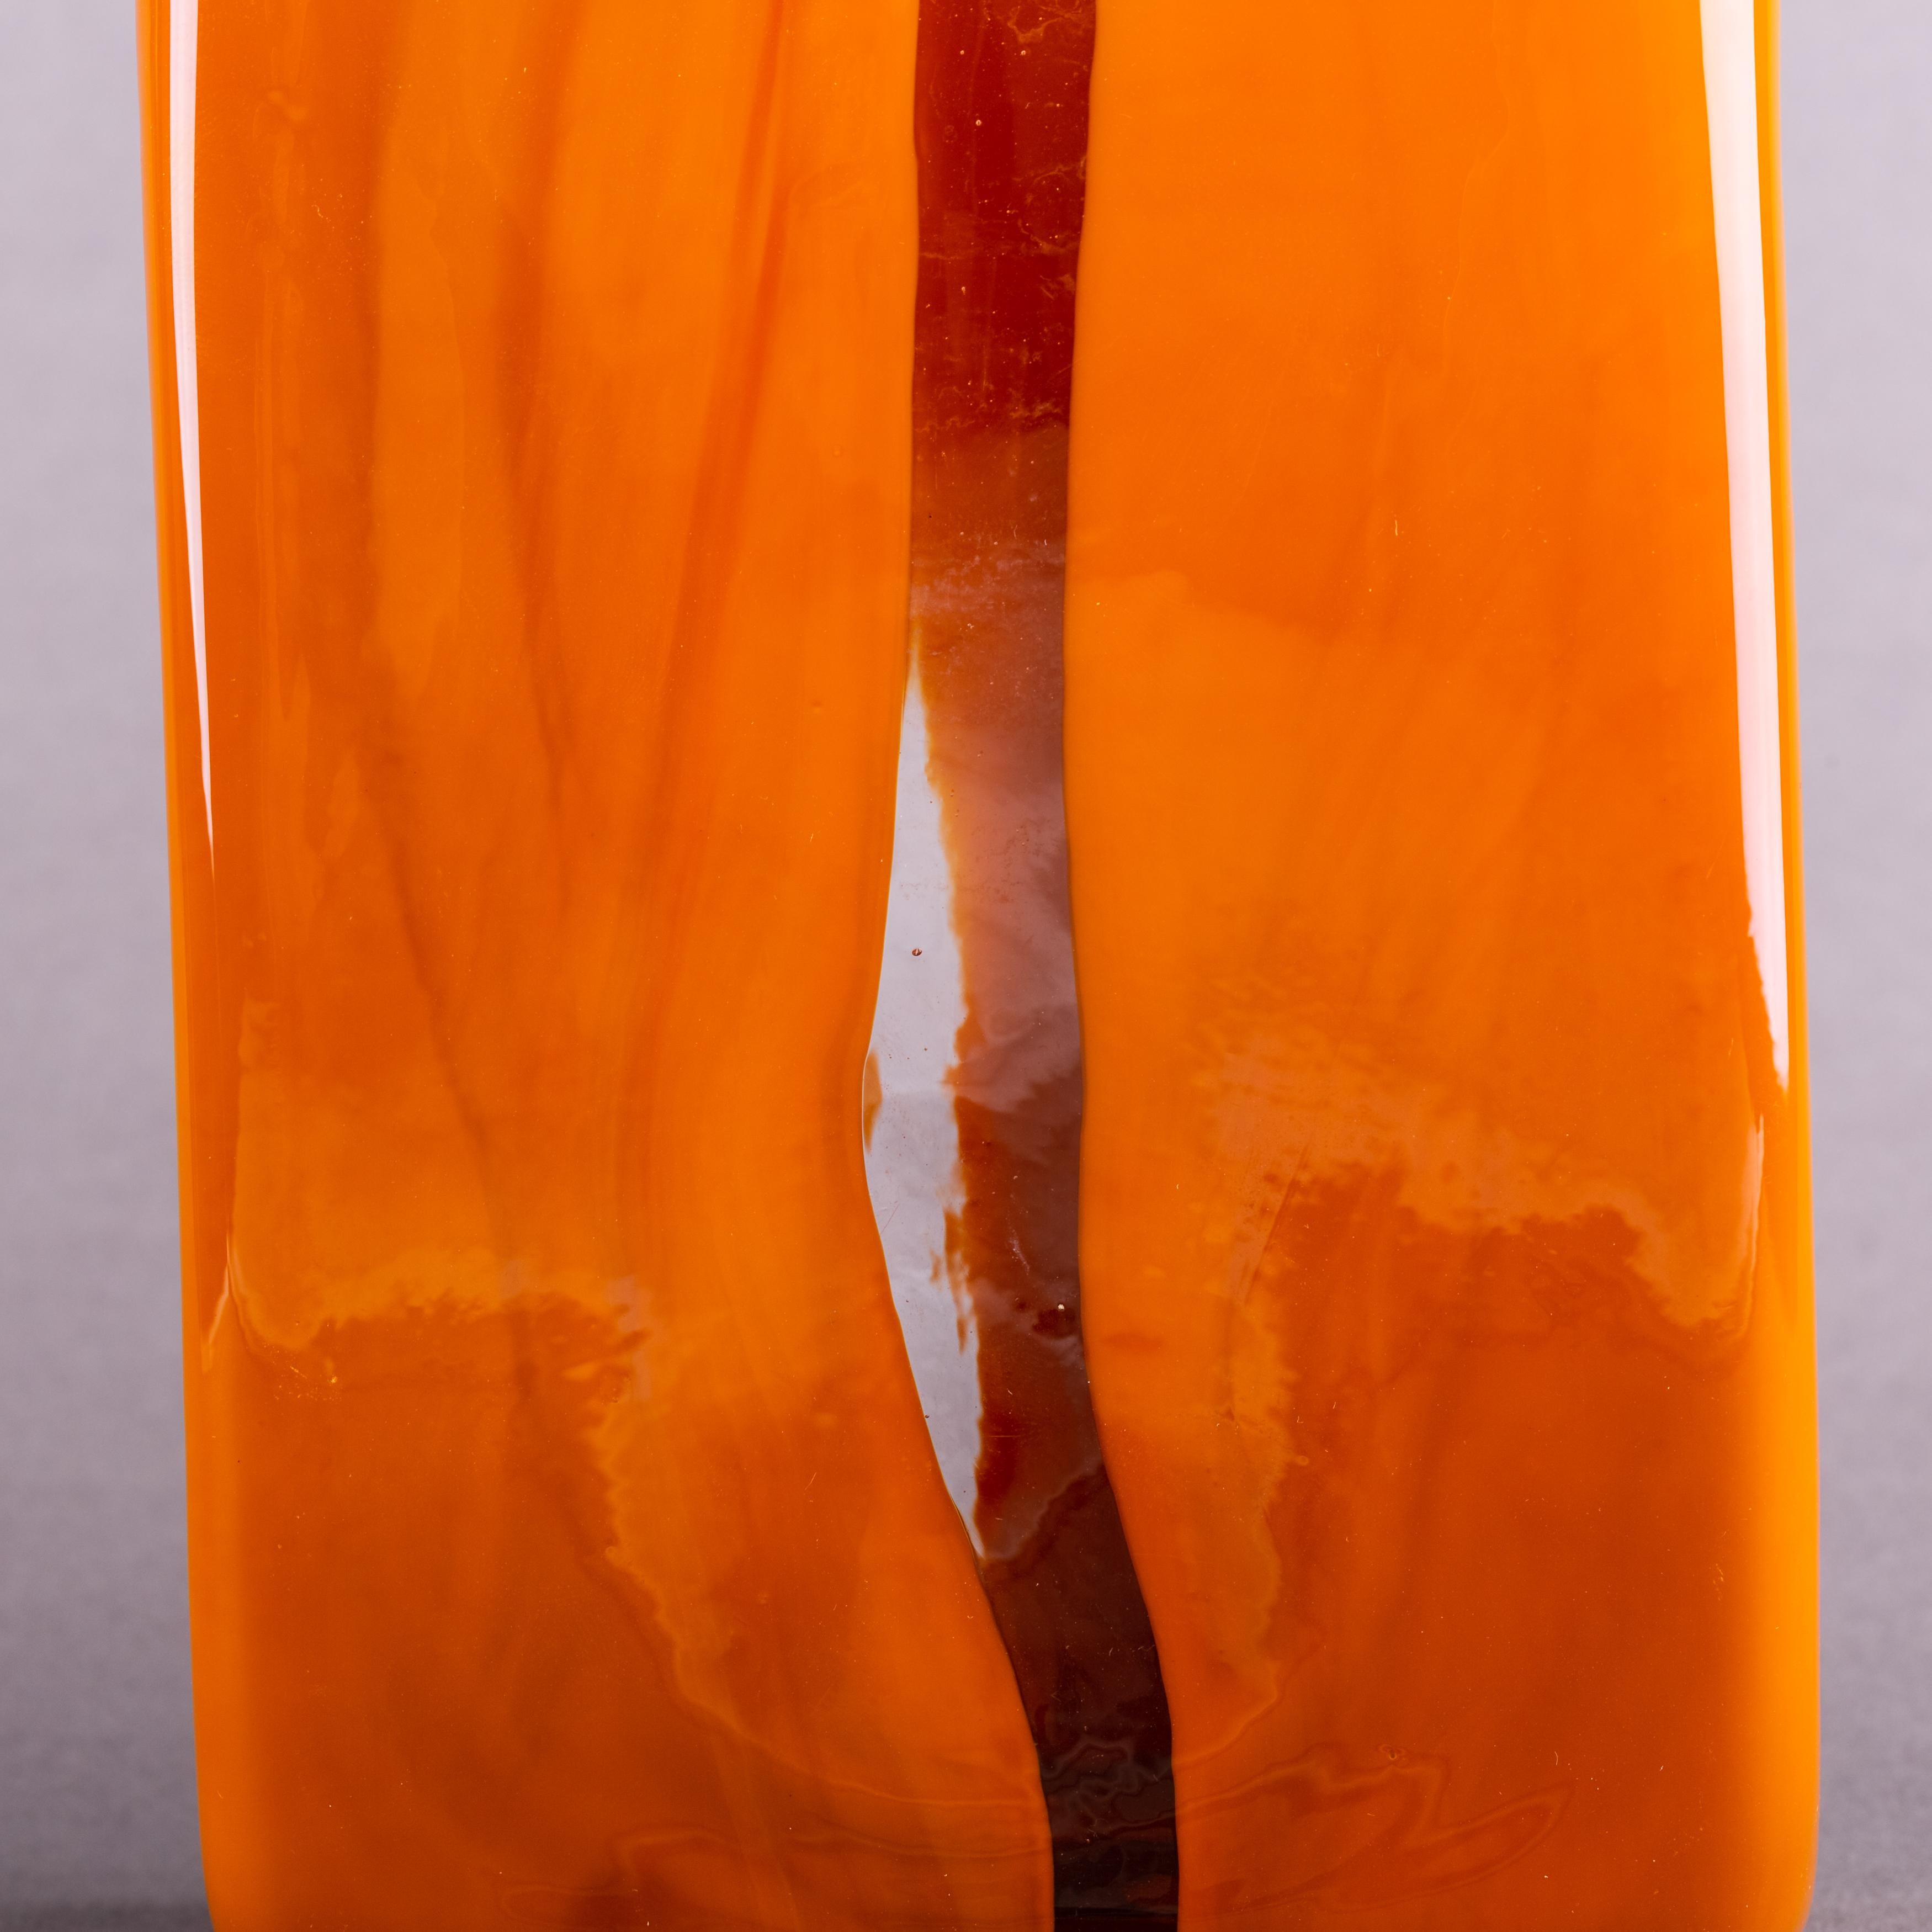 Italian Blown glass Scolpito vase (amber), Toni Zuccheri, Venini Murano (Italy)